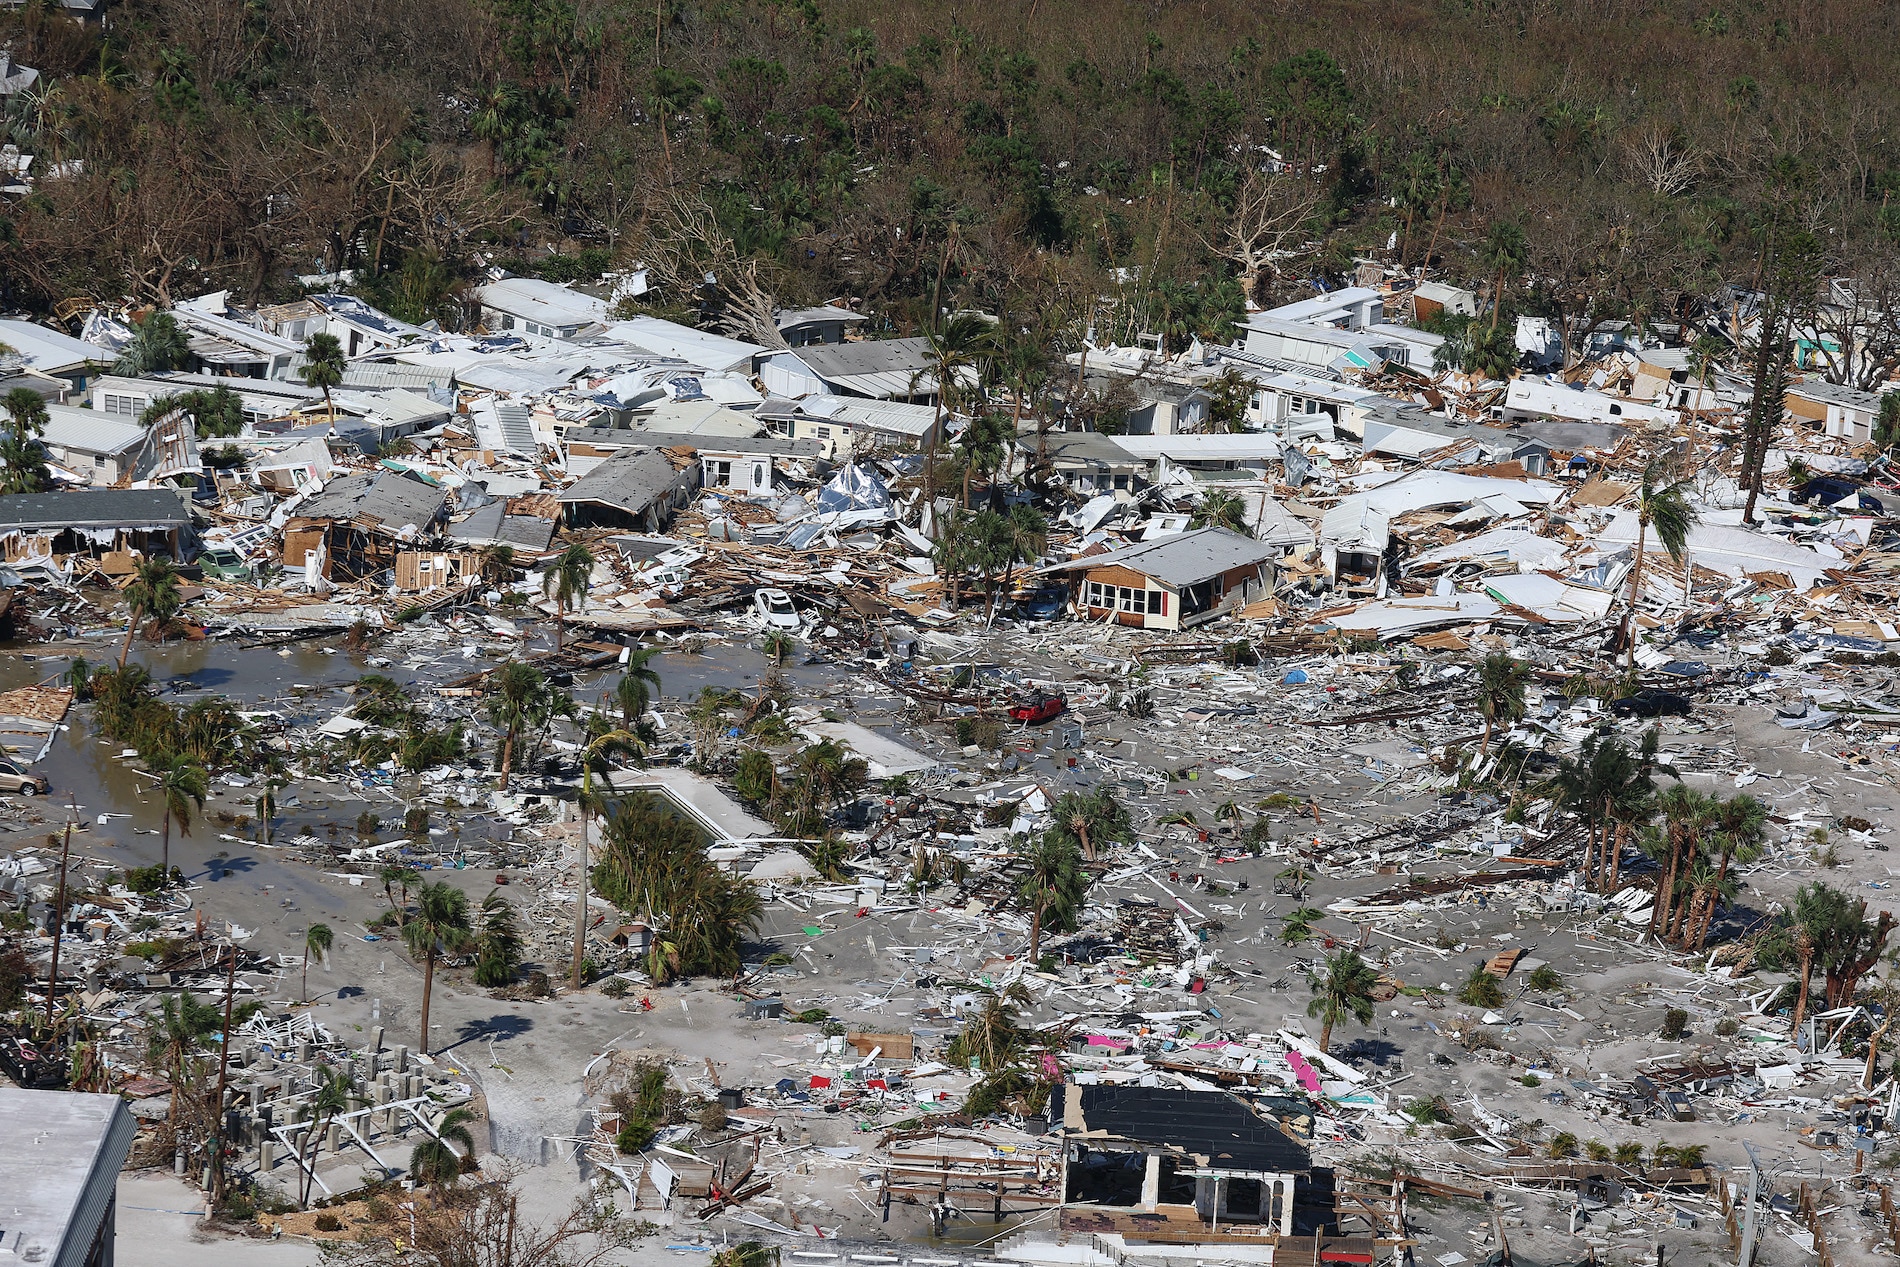 Consulado de Costa Rica en Miami no tiene reporte de ticos afectados por huracán Ian, pero reconoce devastación en Florida